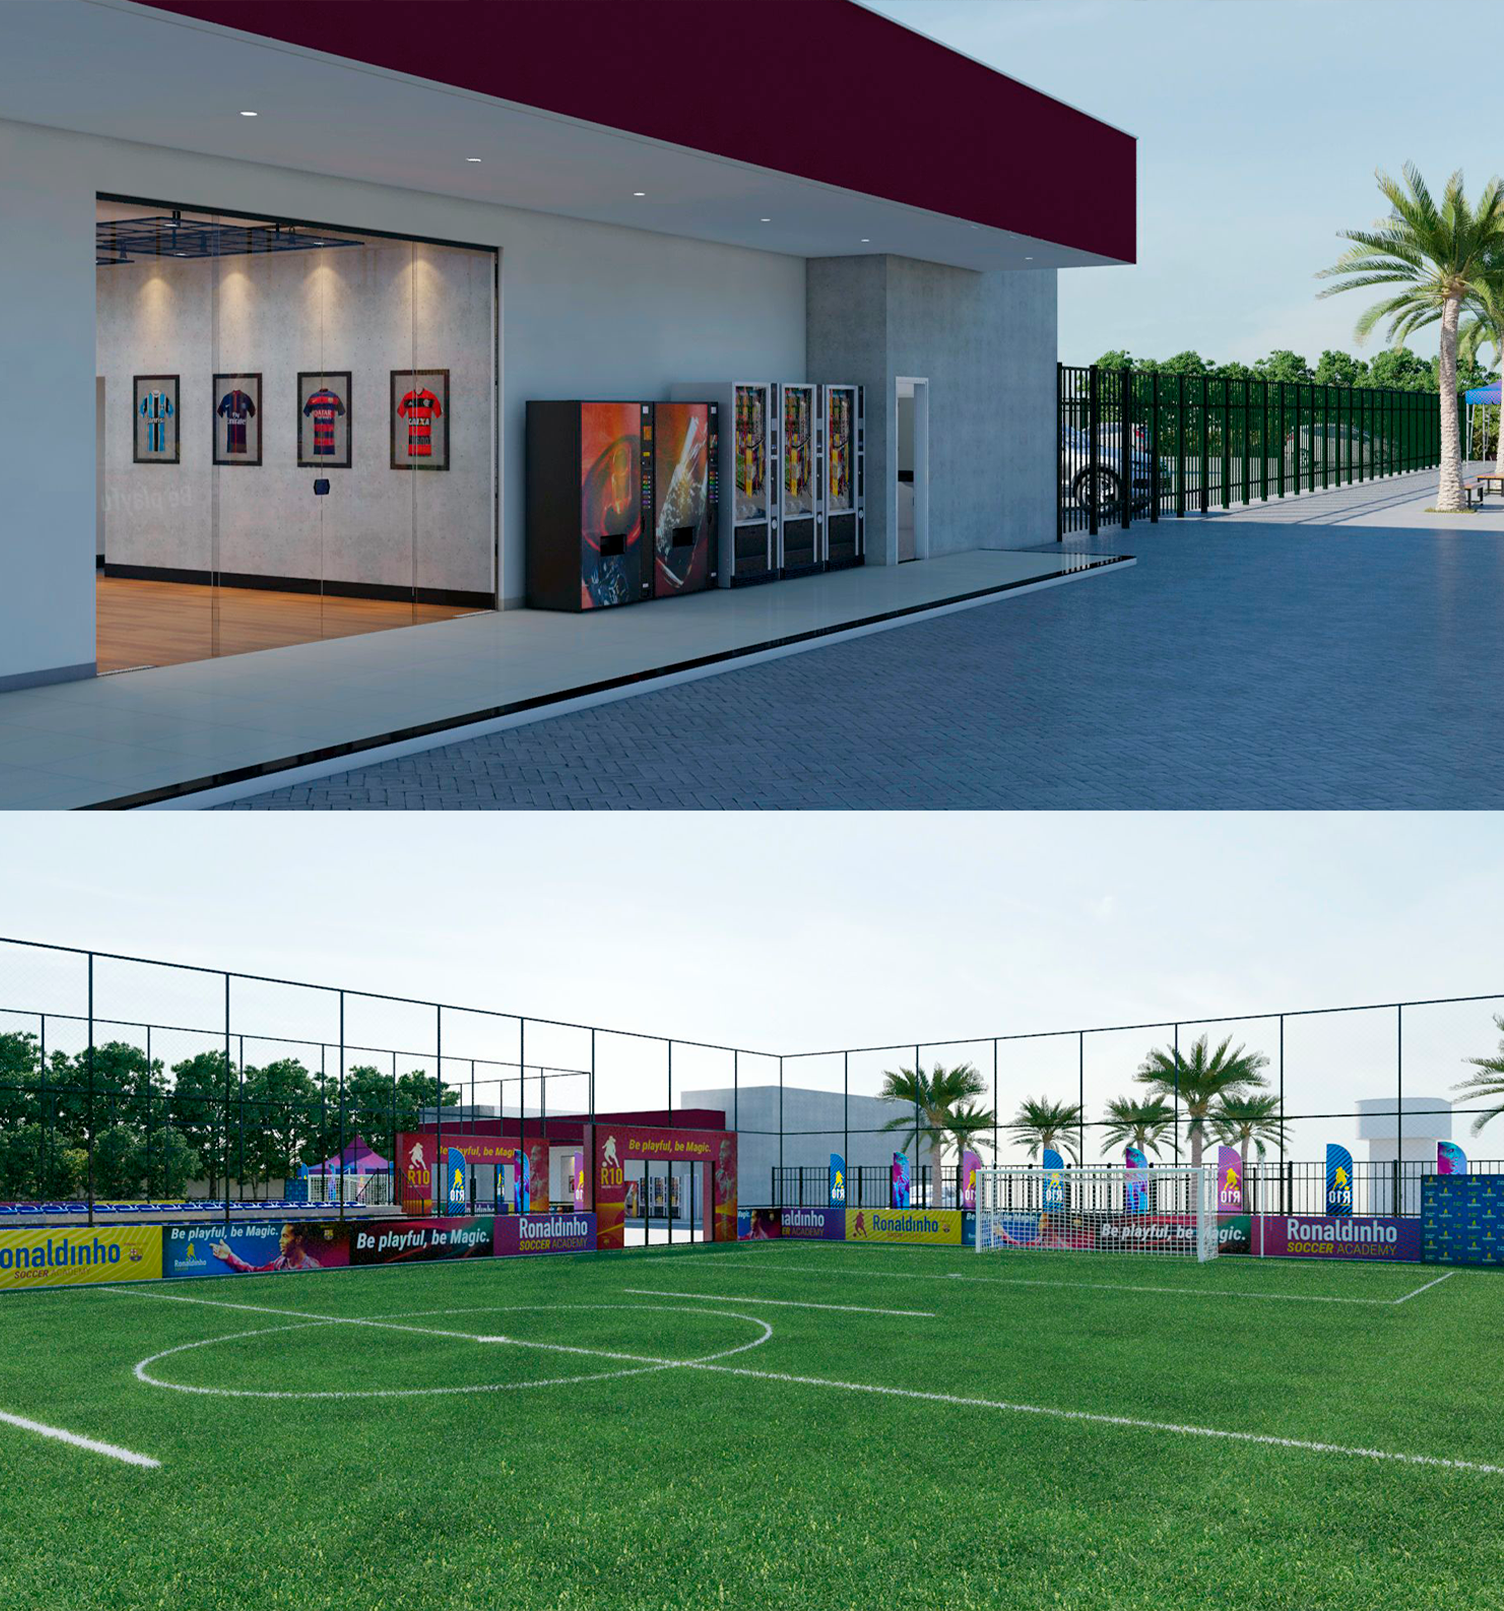 Ronaldinho Soccer Academy Design